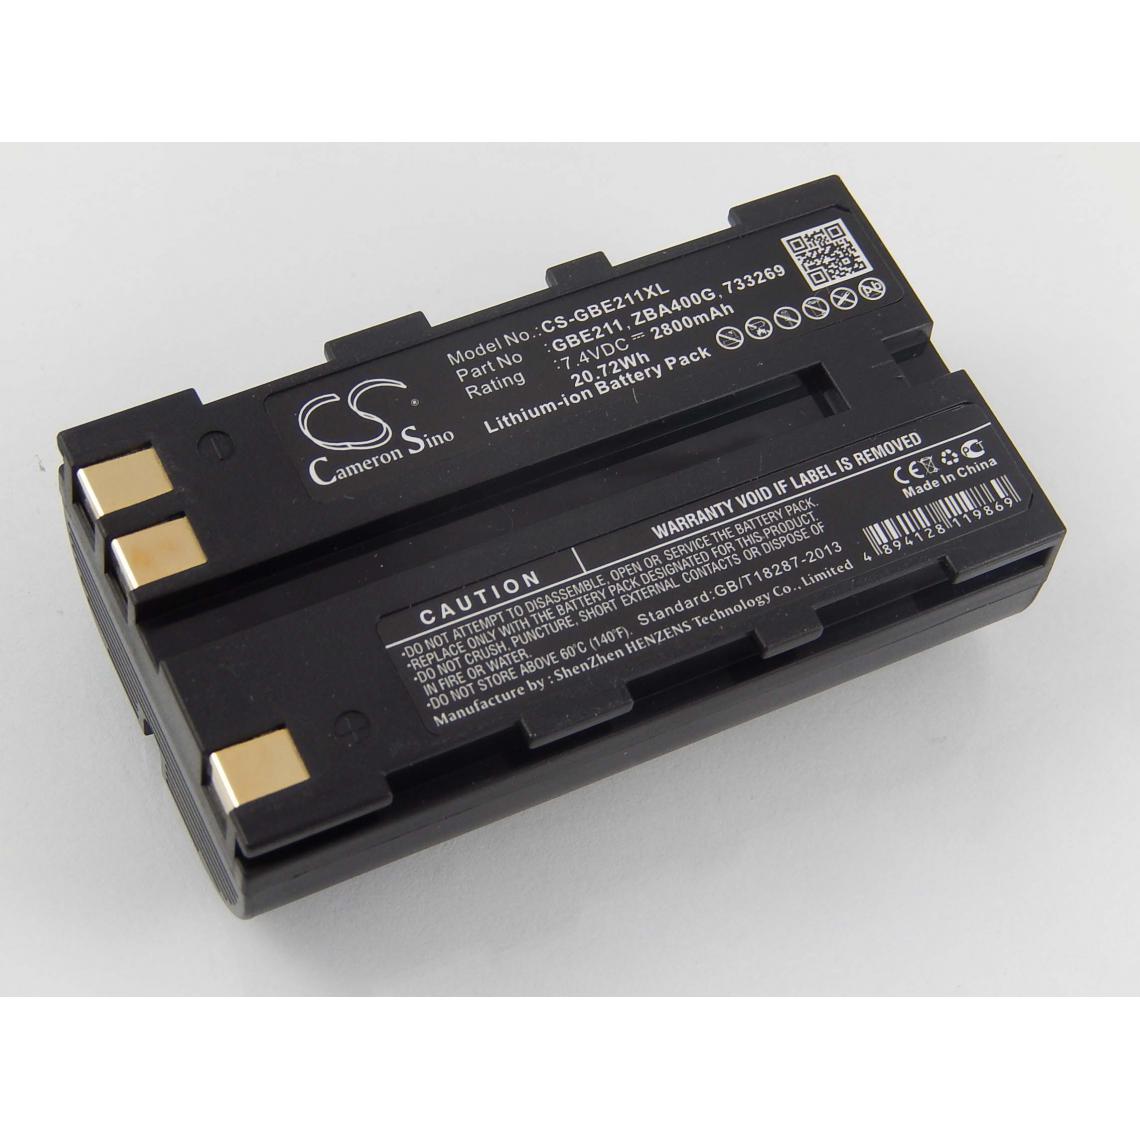 Vhbw - vhbw Batterie compatible avec Leica GNSS receiver, GPS1200 dispositif de mesure laser, outil de mesure (2800mAh, 7,4V, Li-ion) - Piles rechargeables